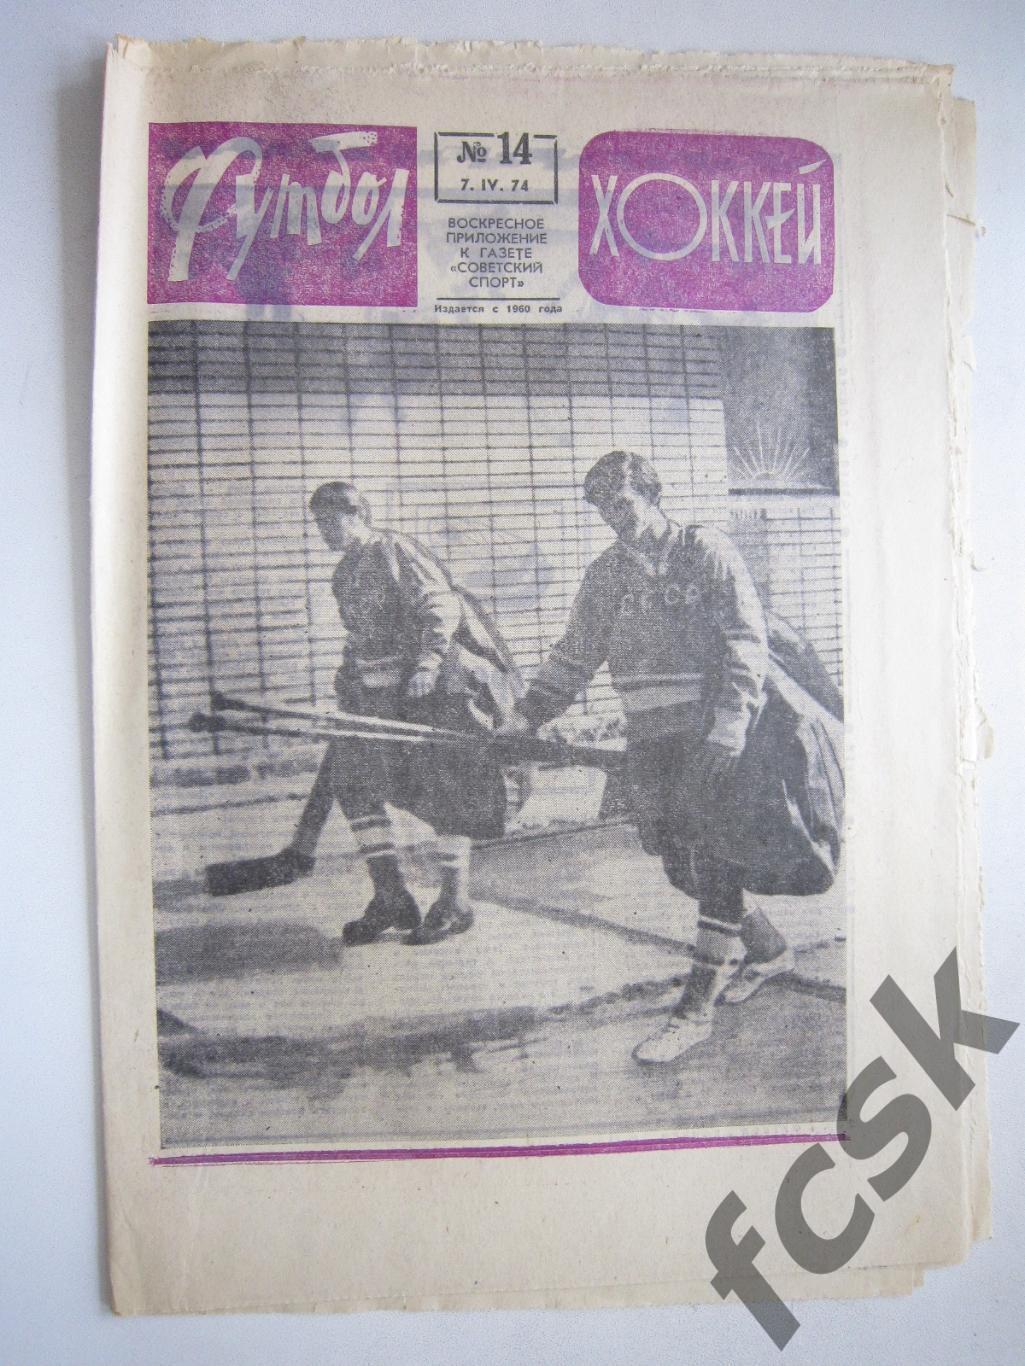 Еженедельник Футбол-Хоккей 1974 № 14 Московская правда (АВ-1)